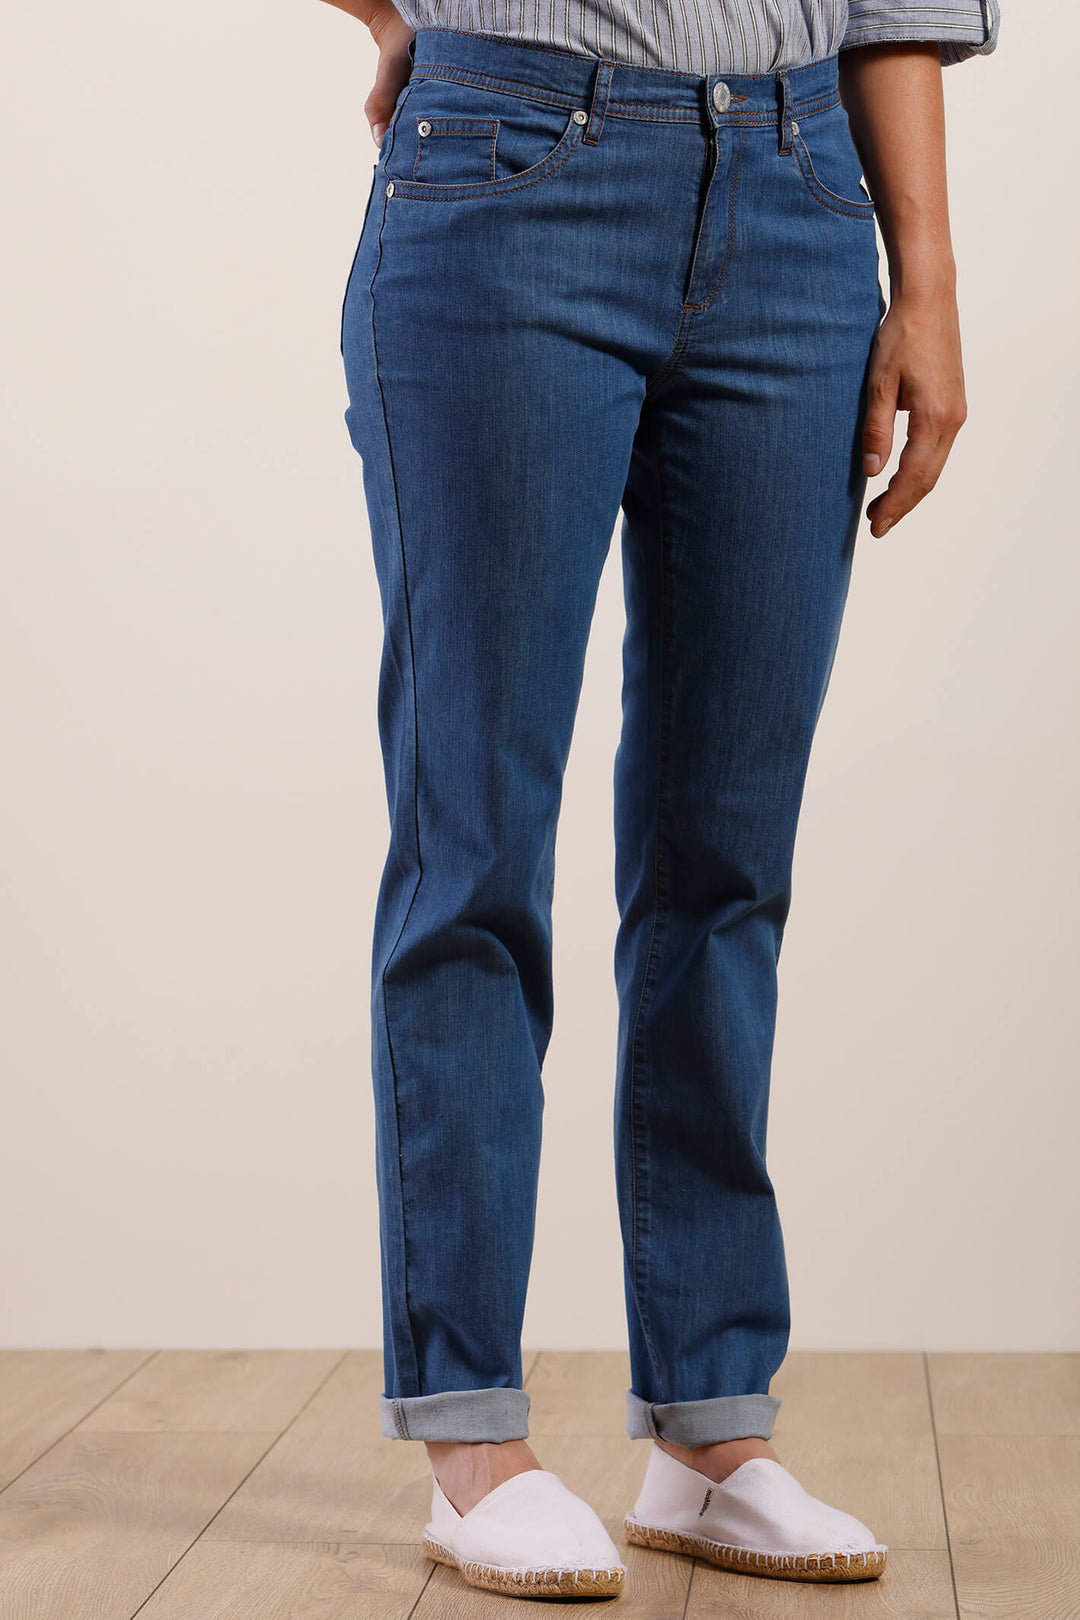 Mat De Misaine 34728 Parson Bleach Blue Jeans - Shirley Allum Boutique